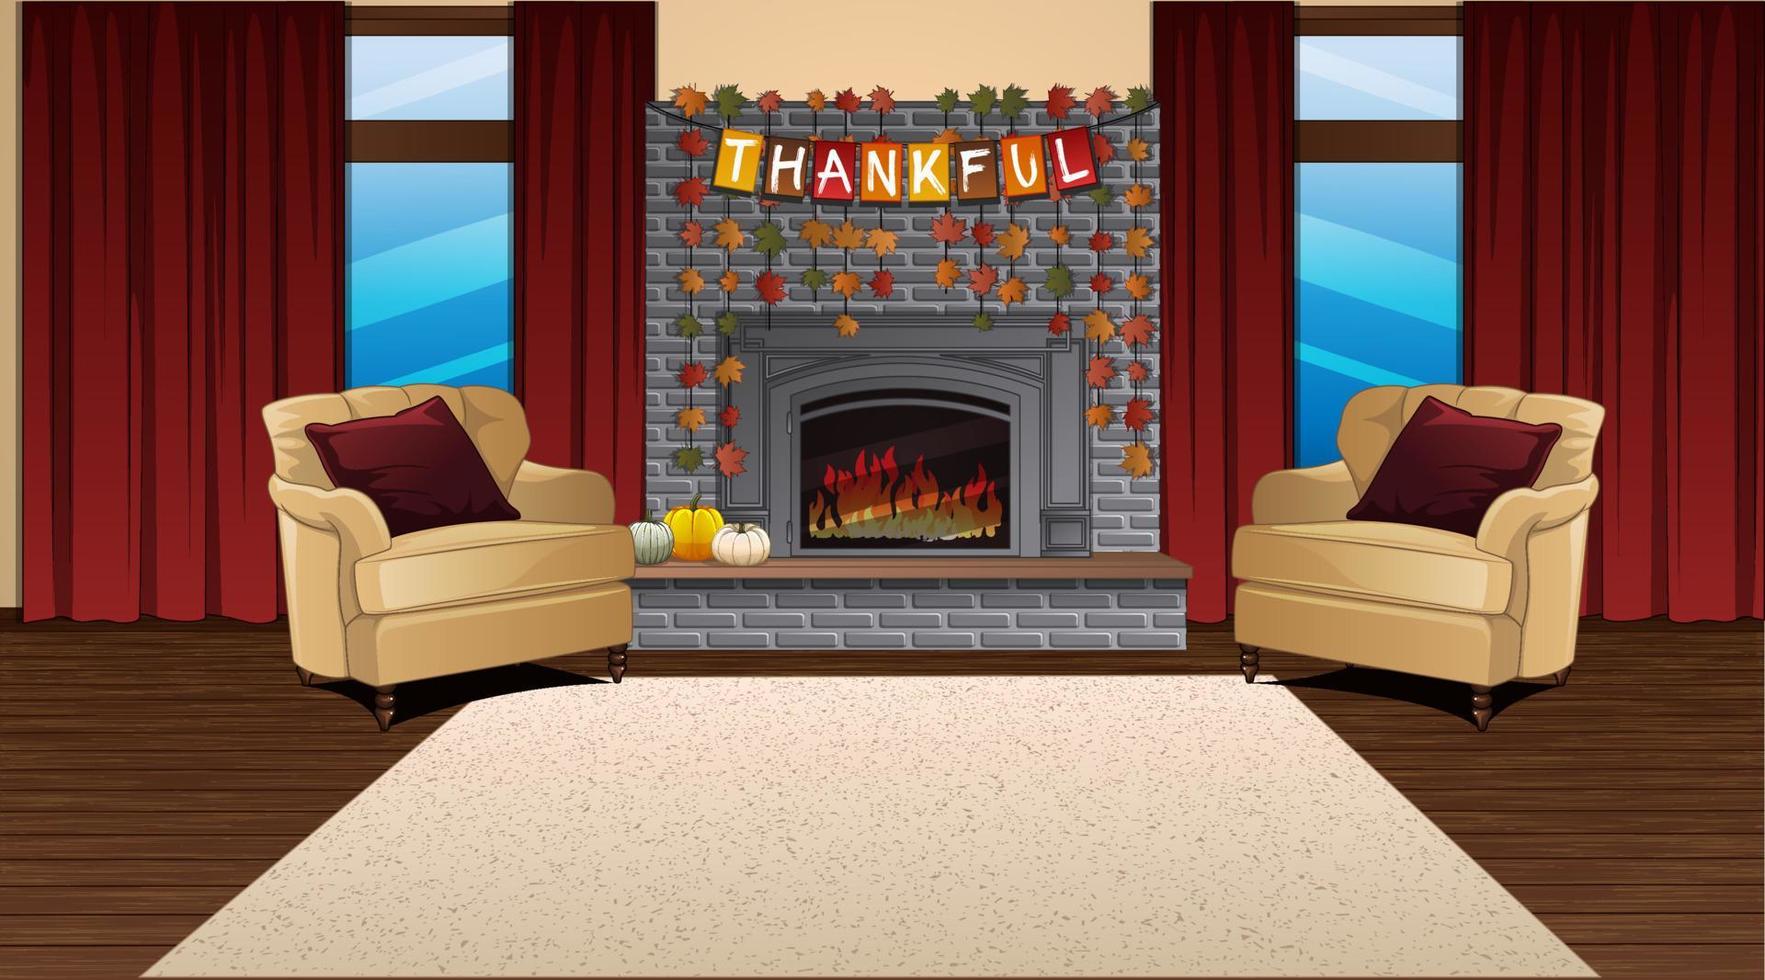 Thanksgiving-Hintergrundszene mit Wohnzimmerkamin, Fenstern, Sesseln und Herbstdekorationen. Vektor-Illustration vektor